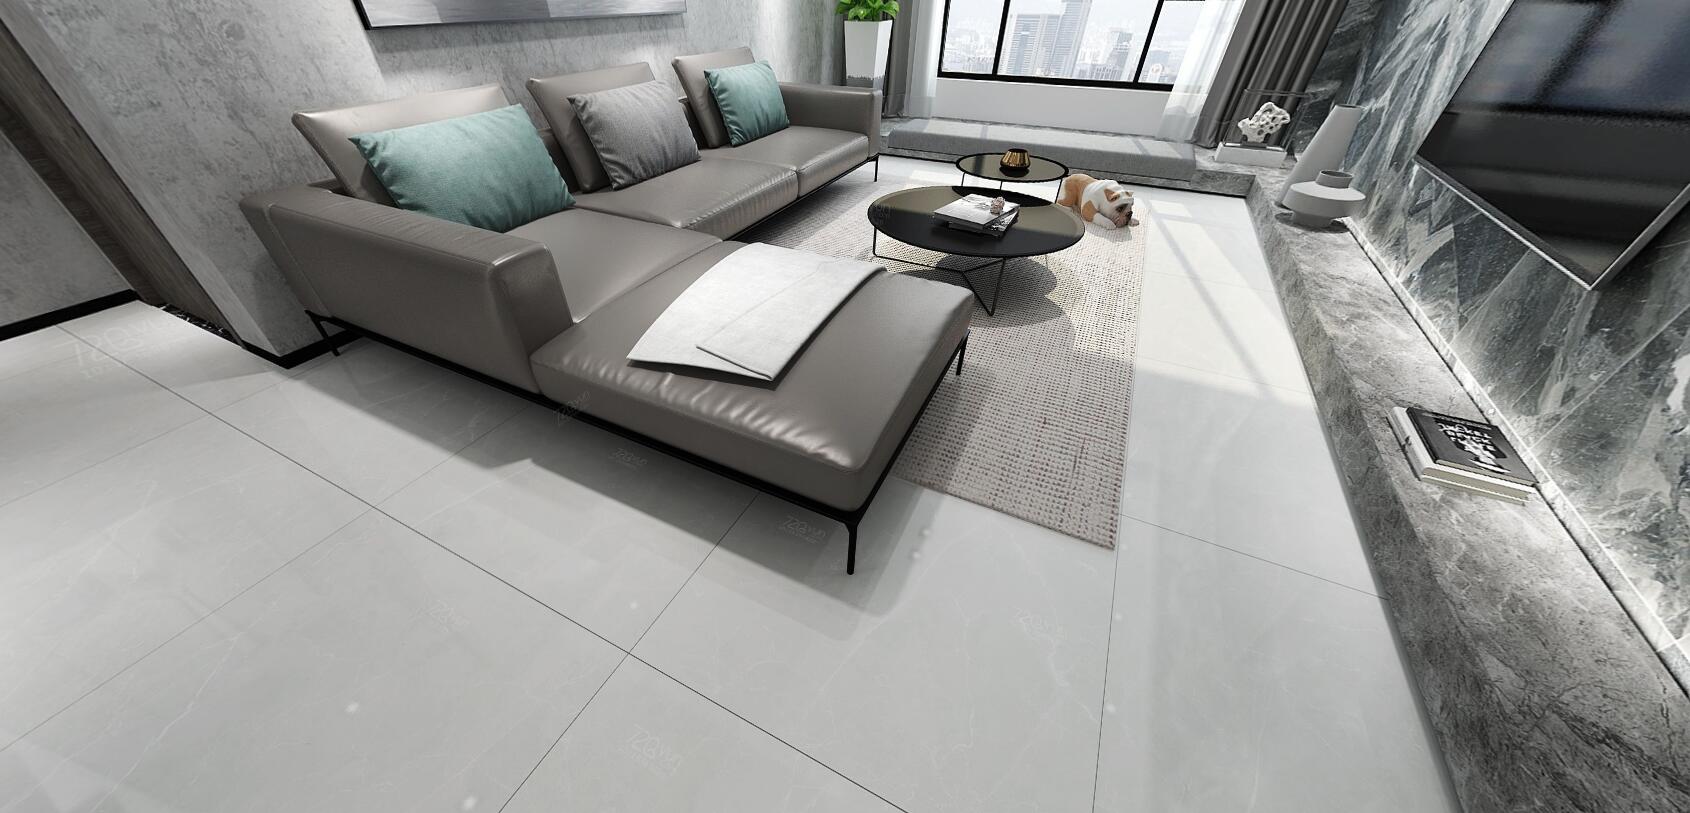 大理石瓷砖阿玛尼-浅灰IPGS90046客厅空间效果图2